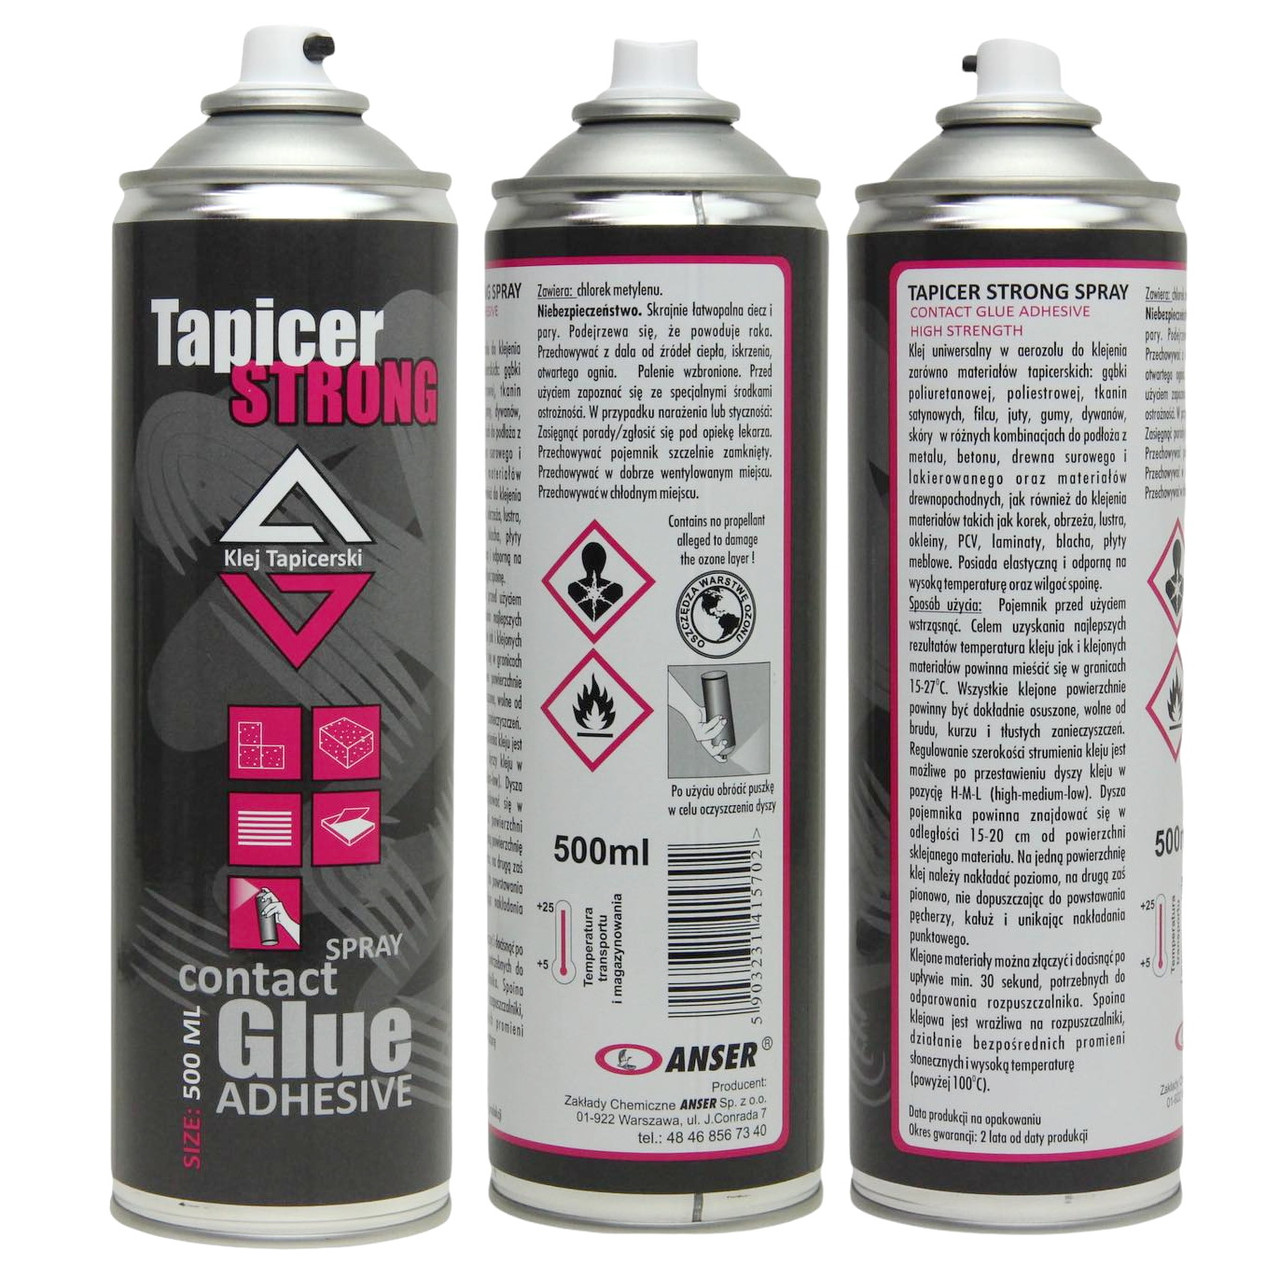 Аэрозольный клей Tapicer Glue Strong (до 60°C) для ткани, ковров, резины, к металлу, бетону, Польша 500мл детальная фотка